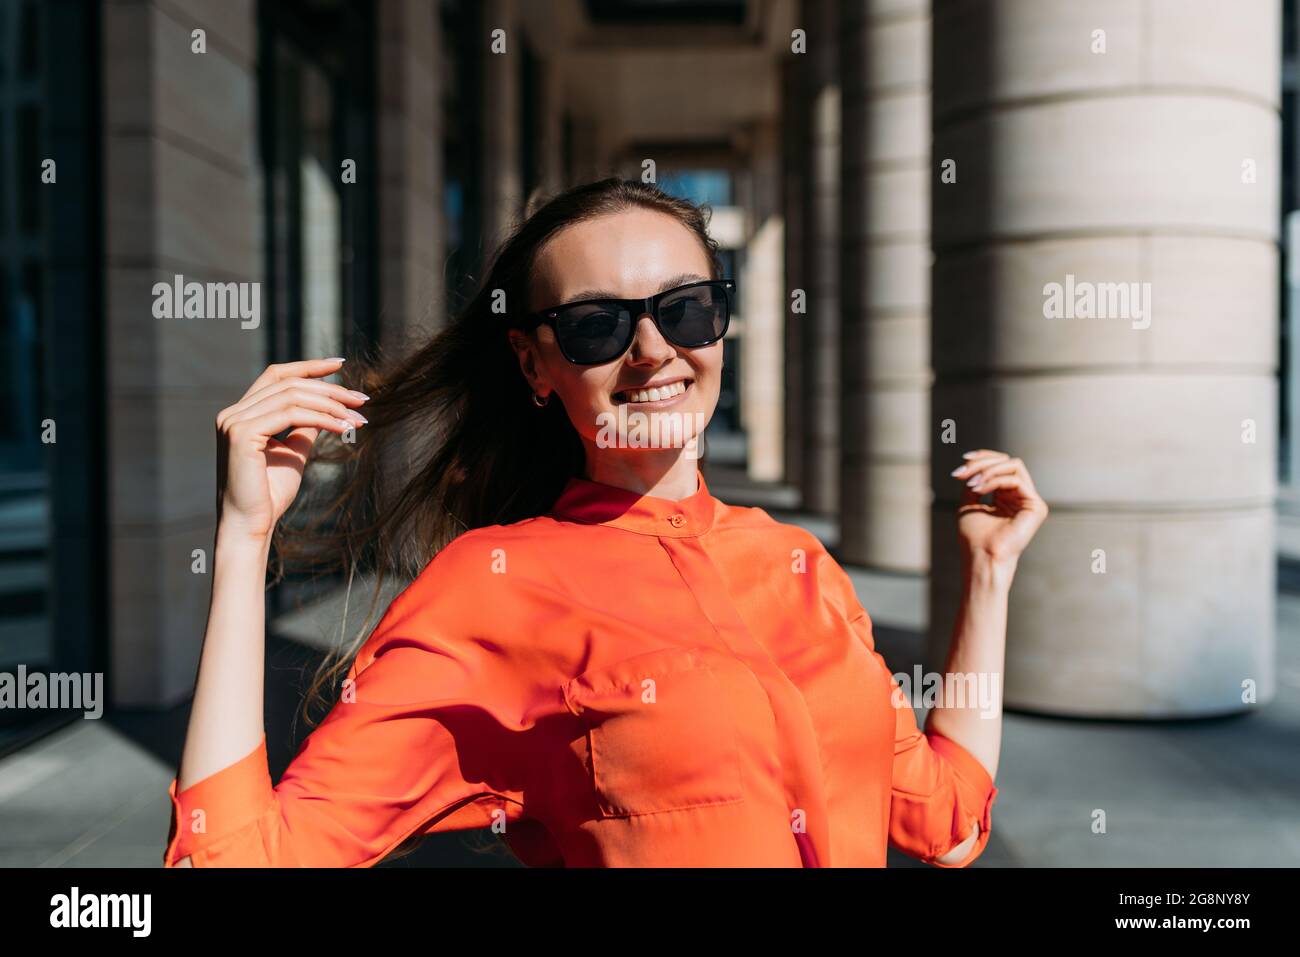 Chica caucásica en gafas de sol y ropa informal sonriendo en una caminata Foto de stock